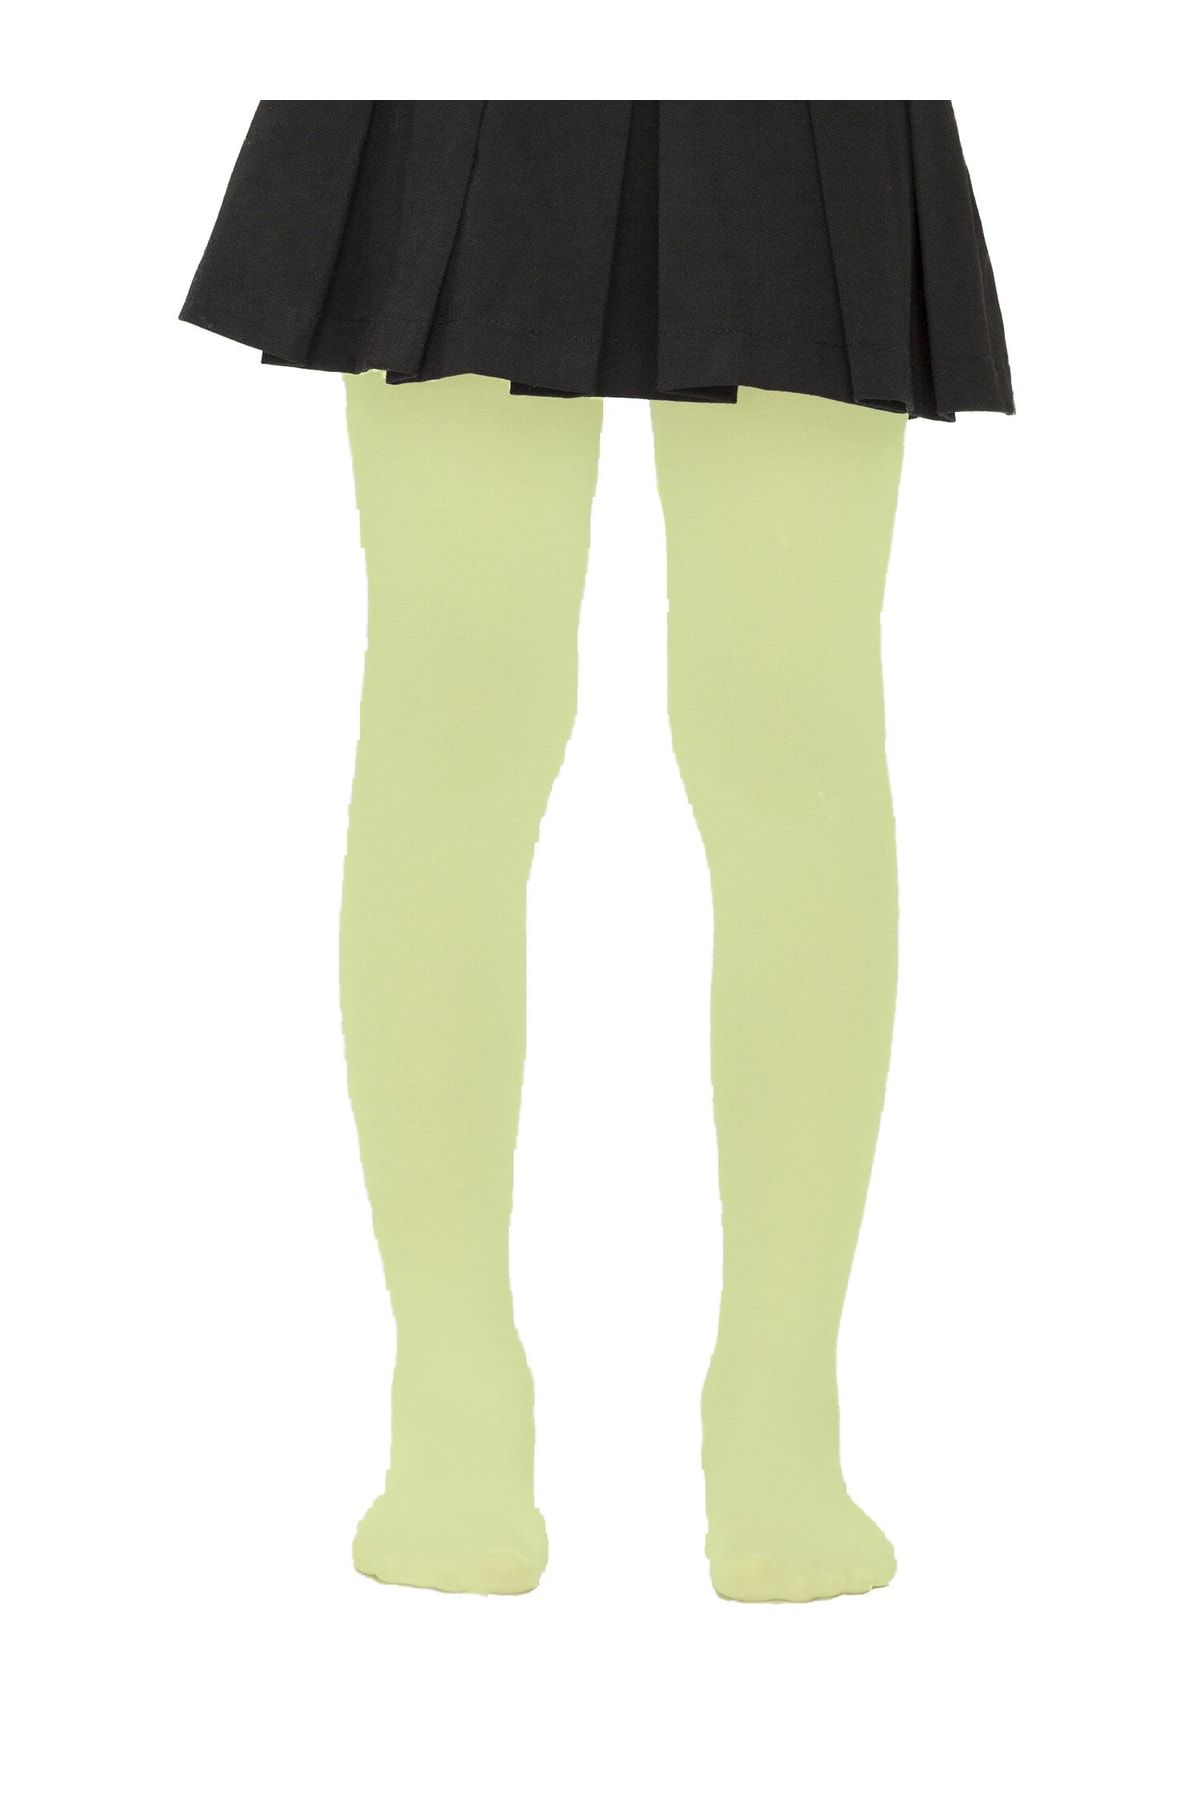 Penti Kız Çocuk Fıstık Yeşil Düz Micro 40- Mus Külotlu Çorap